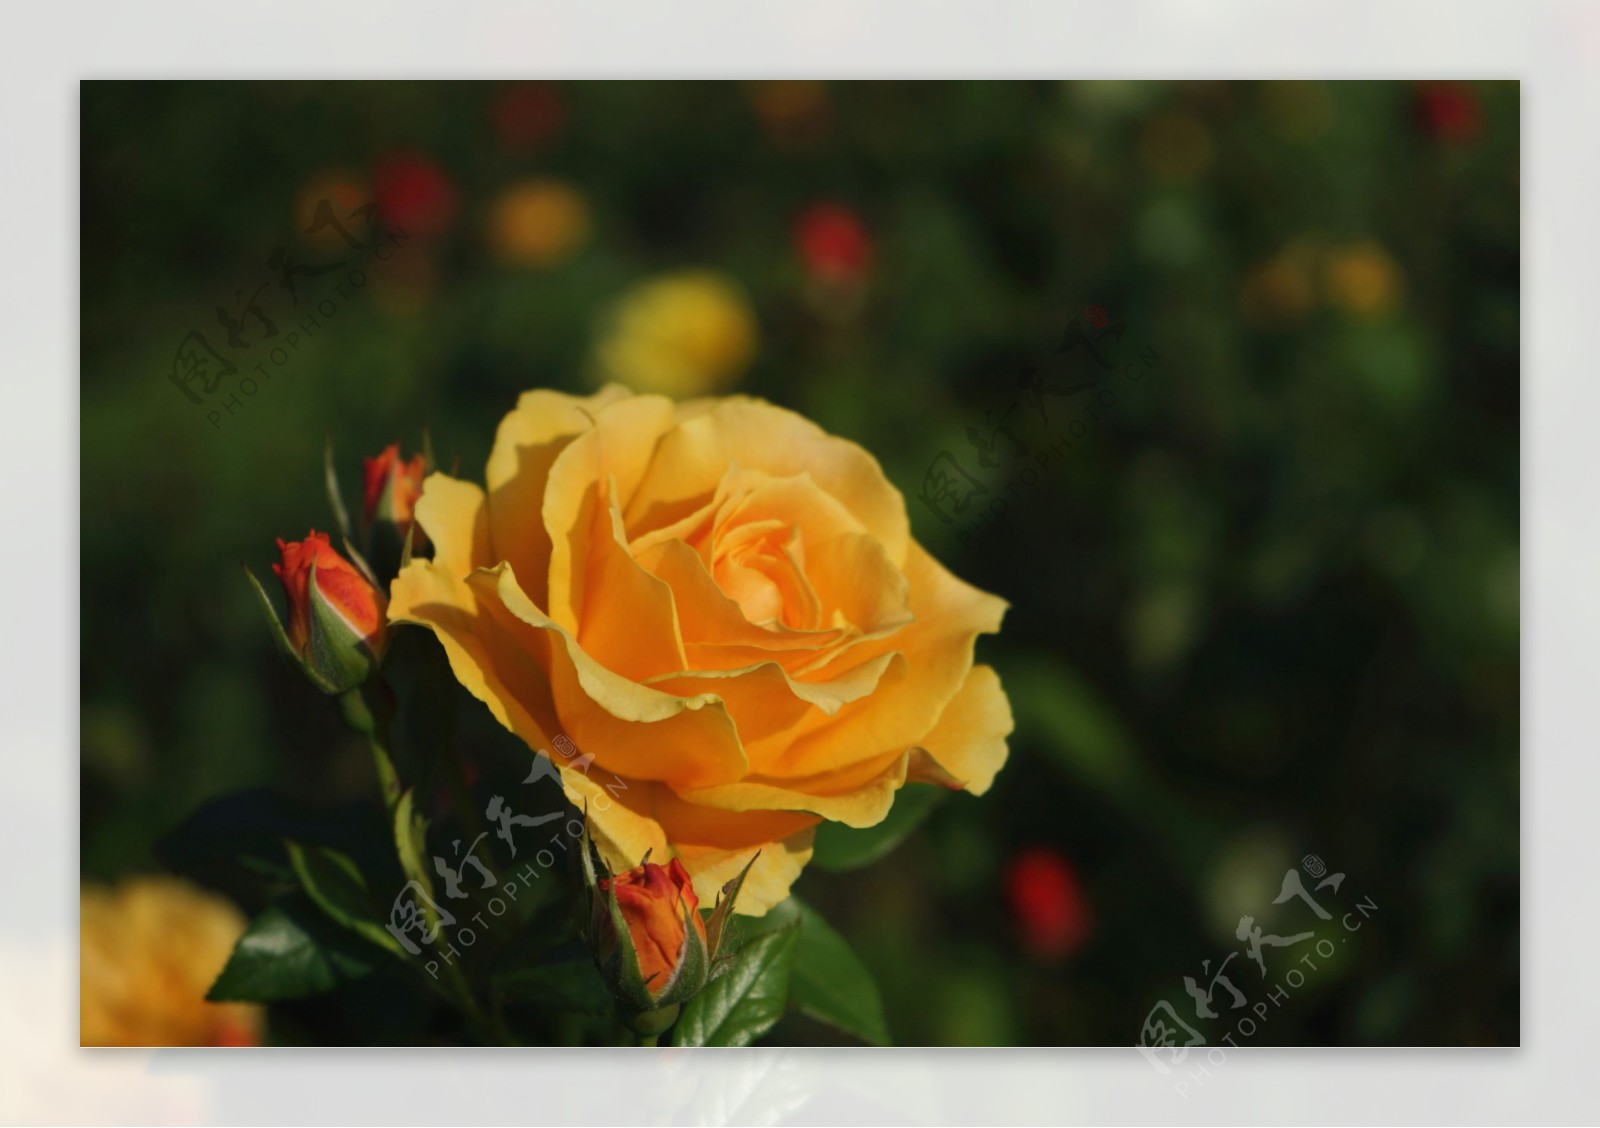 唯美黄玫瑰花图片